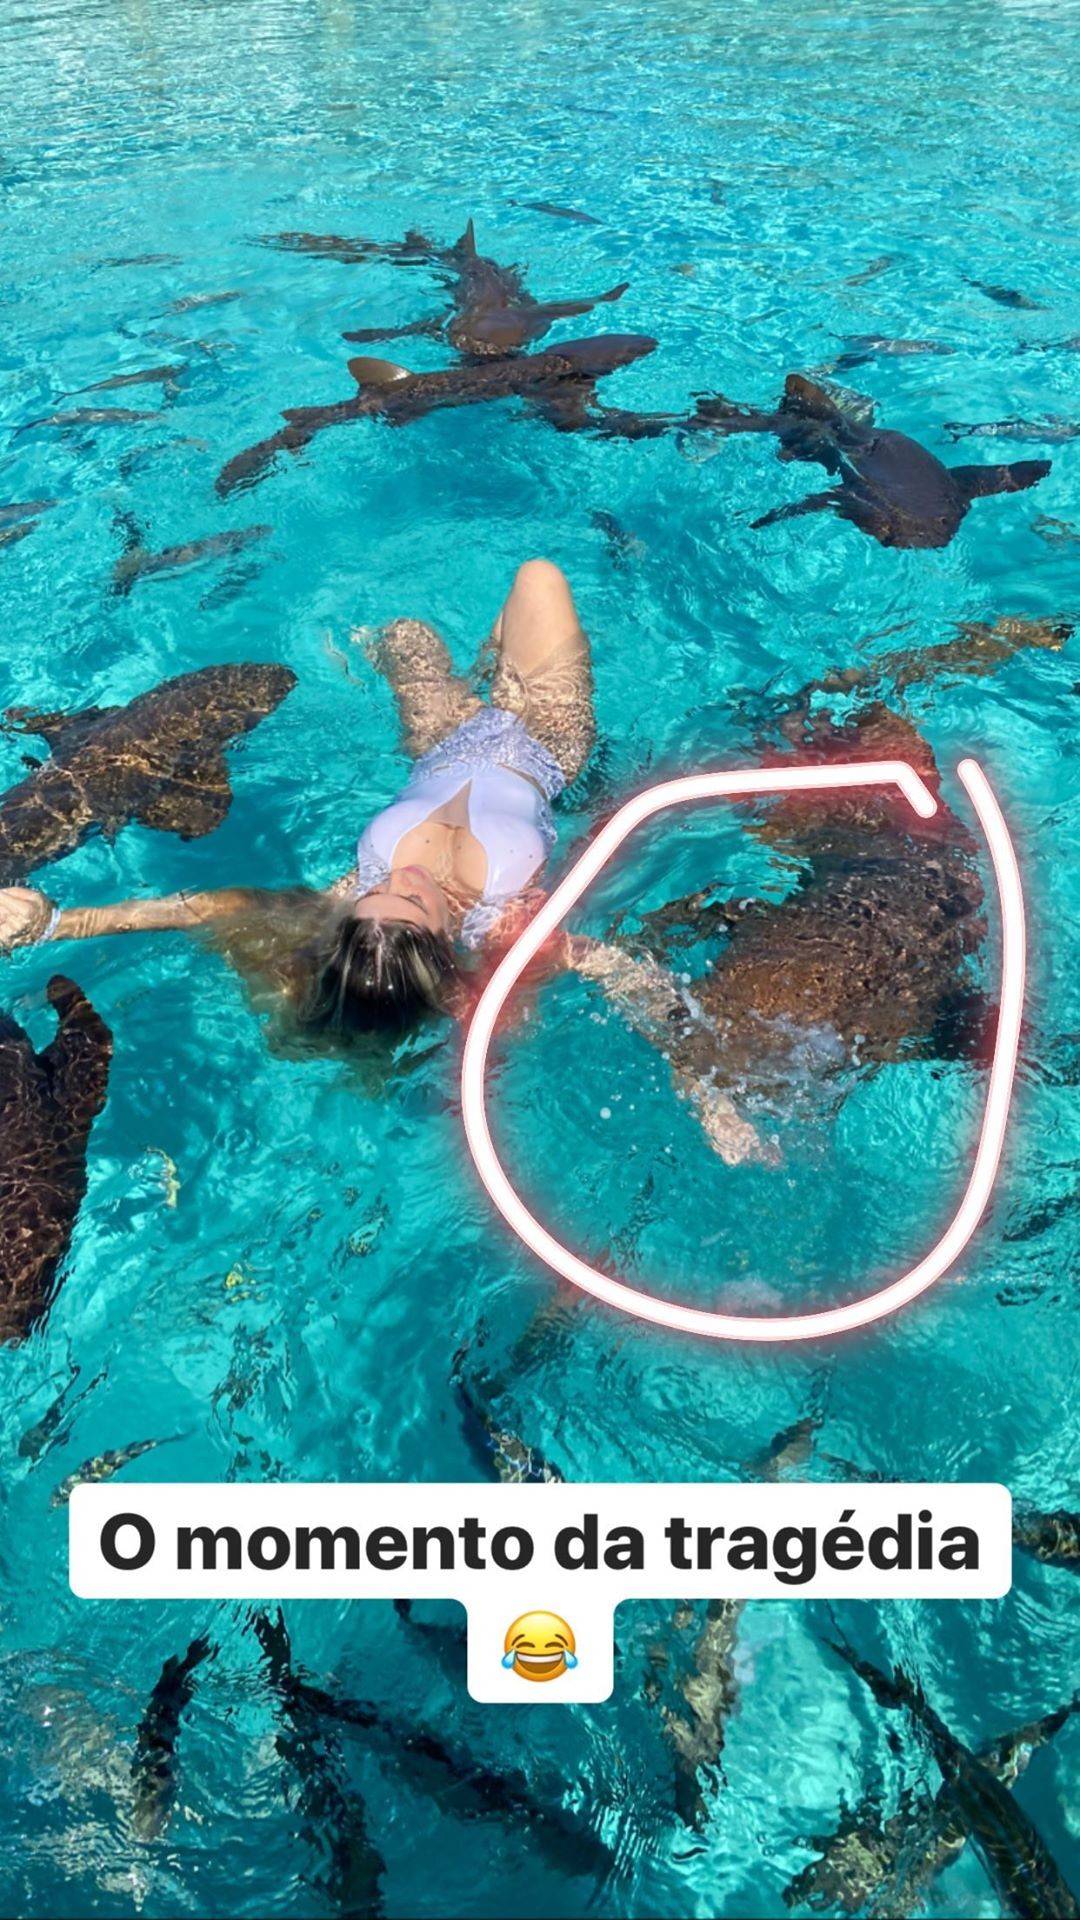 Blogueira é mordida por tubarão enquanto tirava fotos (Foto: Reprodução/Instagram)